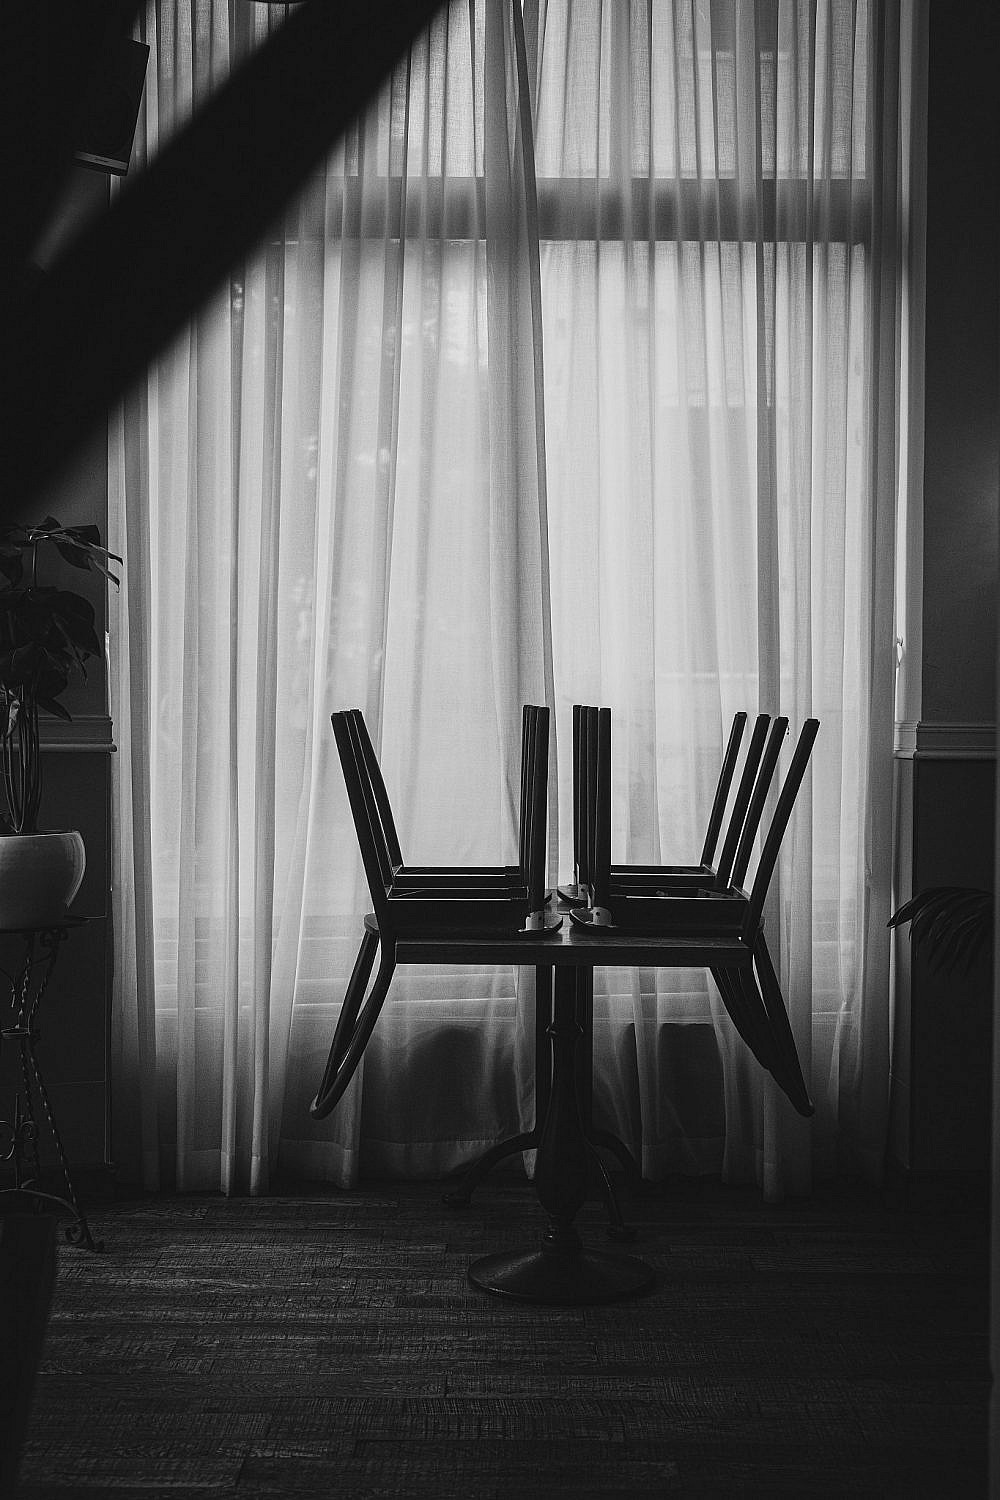 כסאות מורמים מסמלים את המעבר מסרוויס לסרוויס, בלילה שכולם הולכים הם נחים על השולחן, תכף הרצפה תשטף ויתחיל ערב נוסף. צילום: חיים יוסף